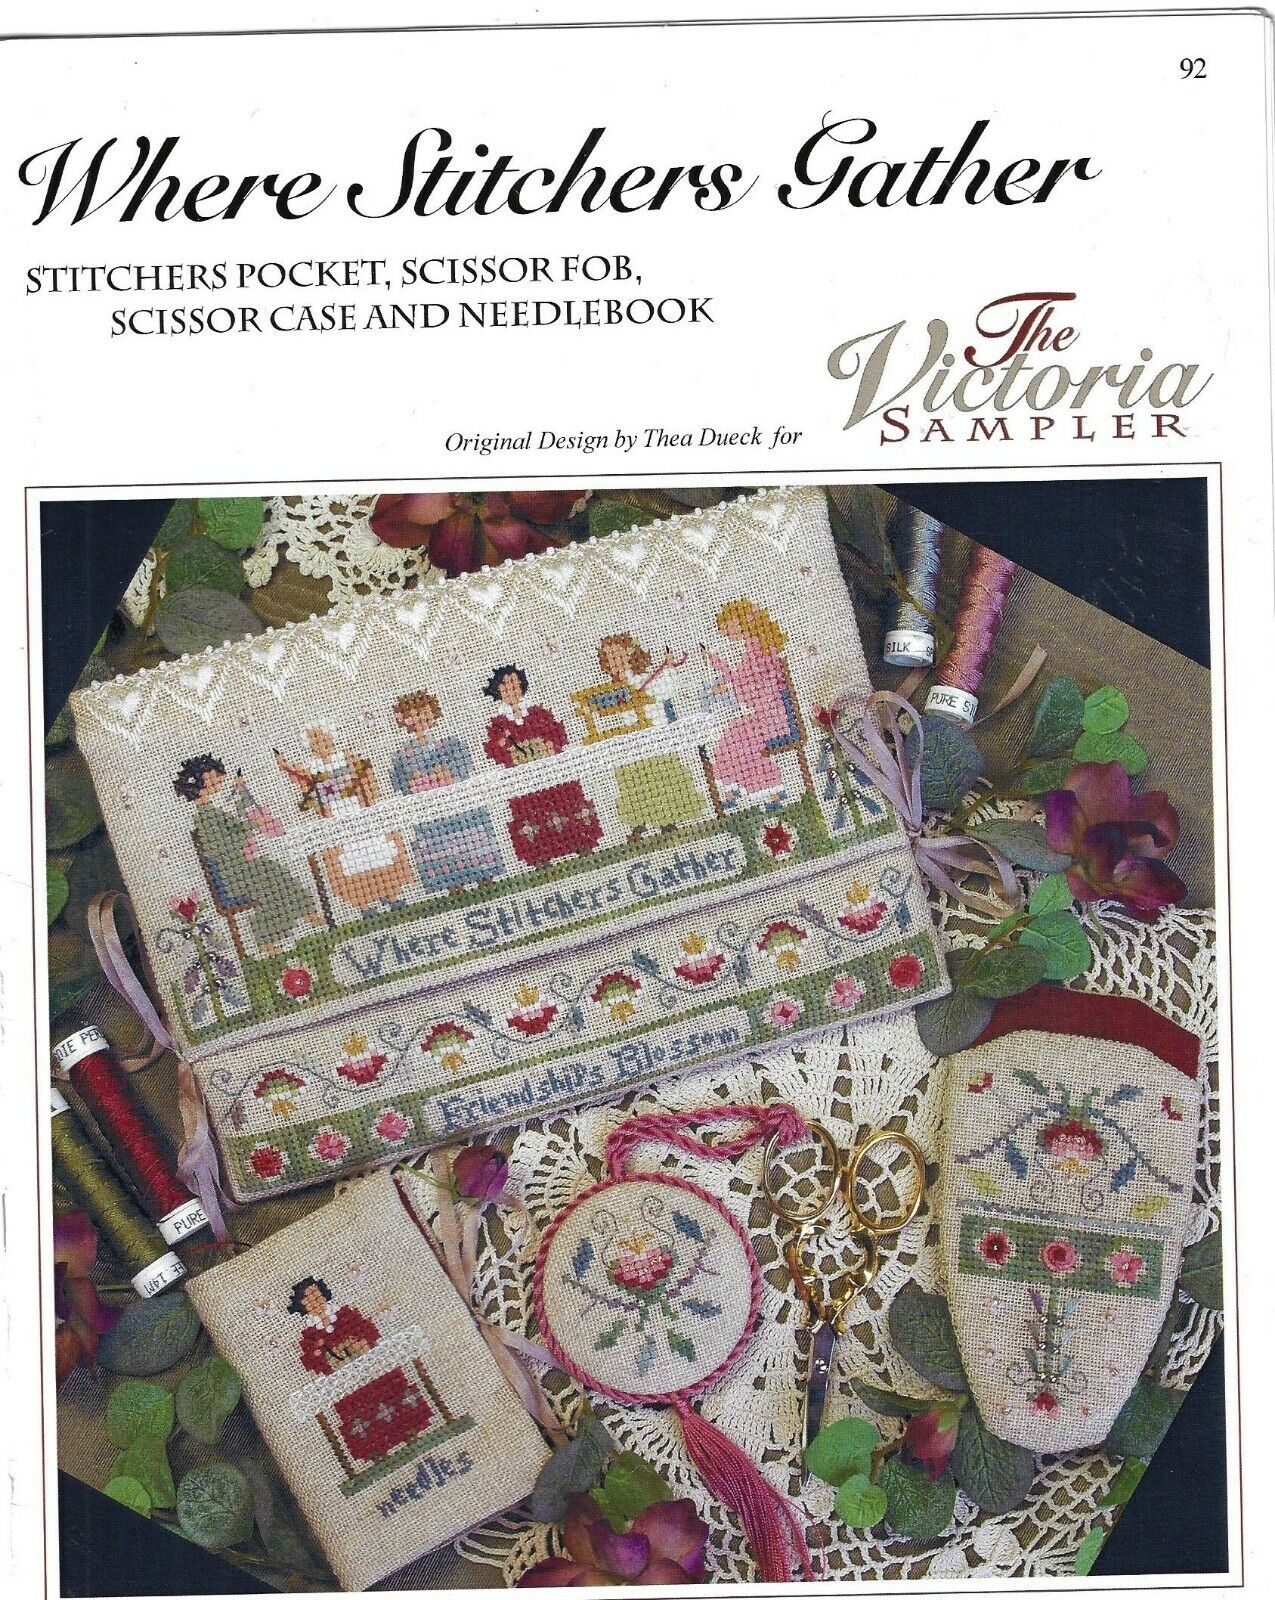 The Victoria Sampler~Where Stitcher's Gather # 92~ assembled kit